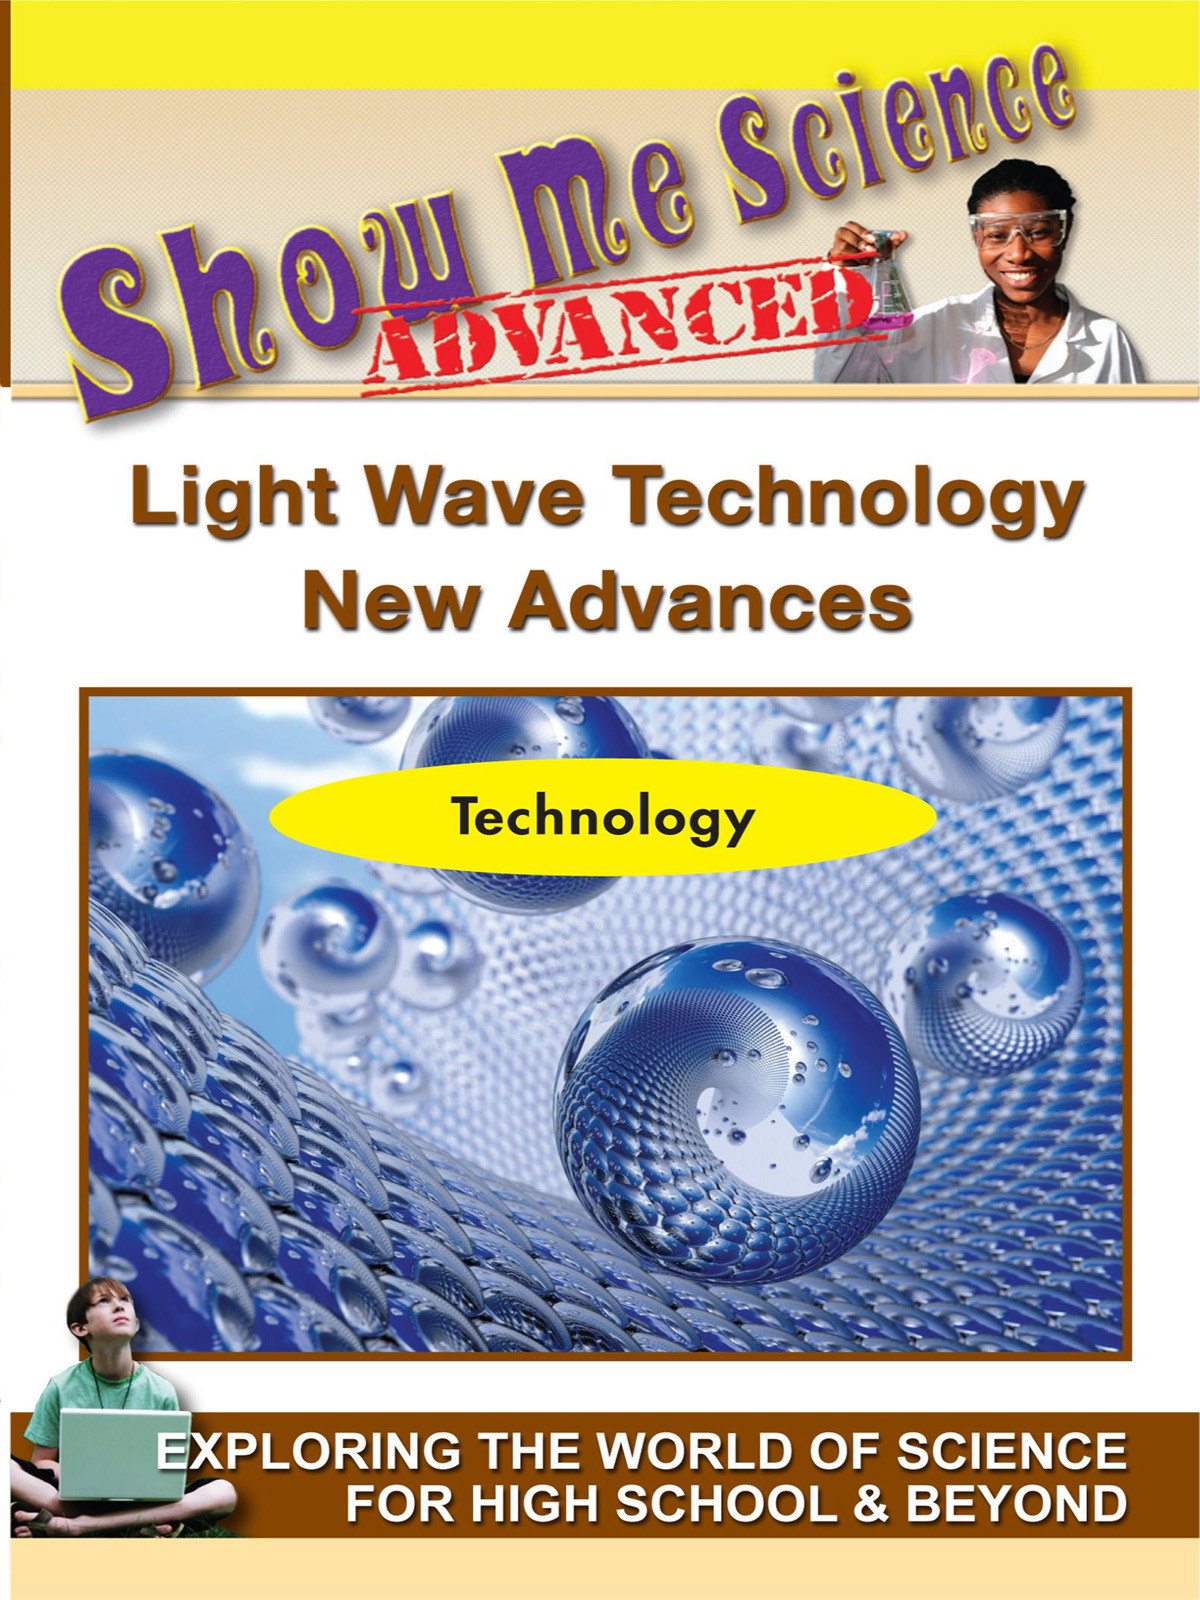 K4625 - Science Technology Light Wave Technology New Advances